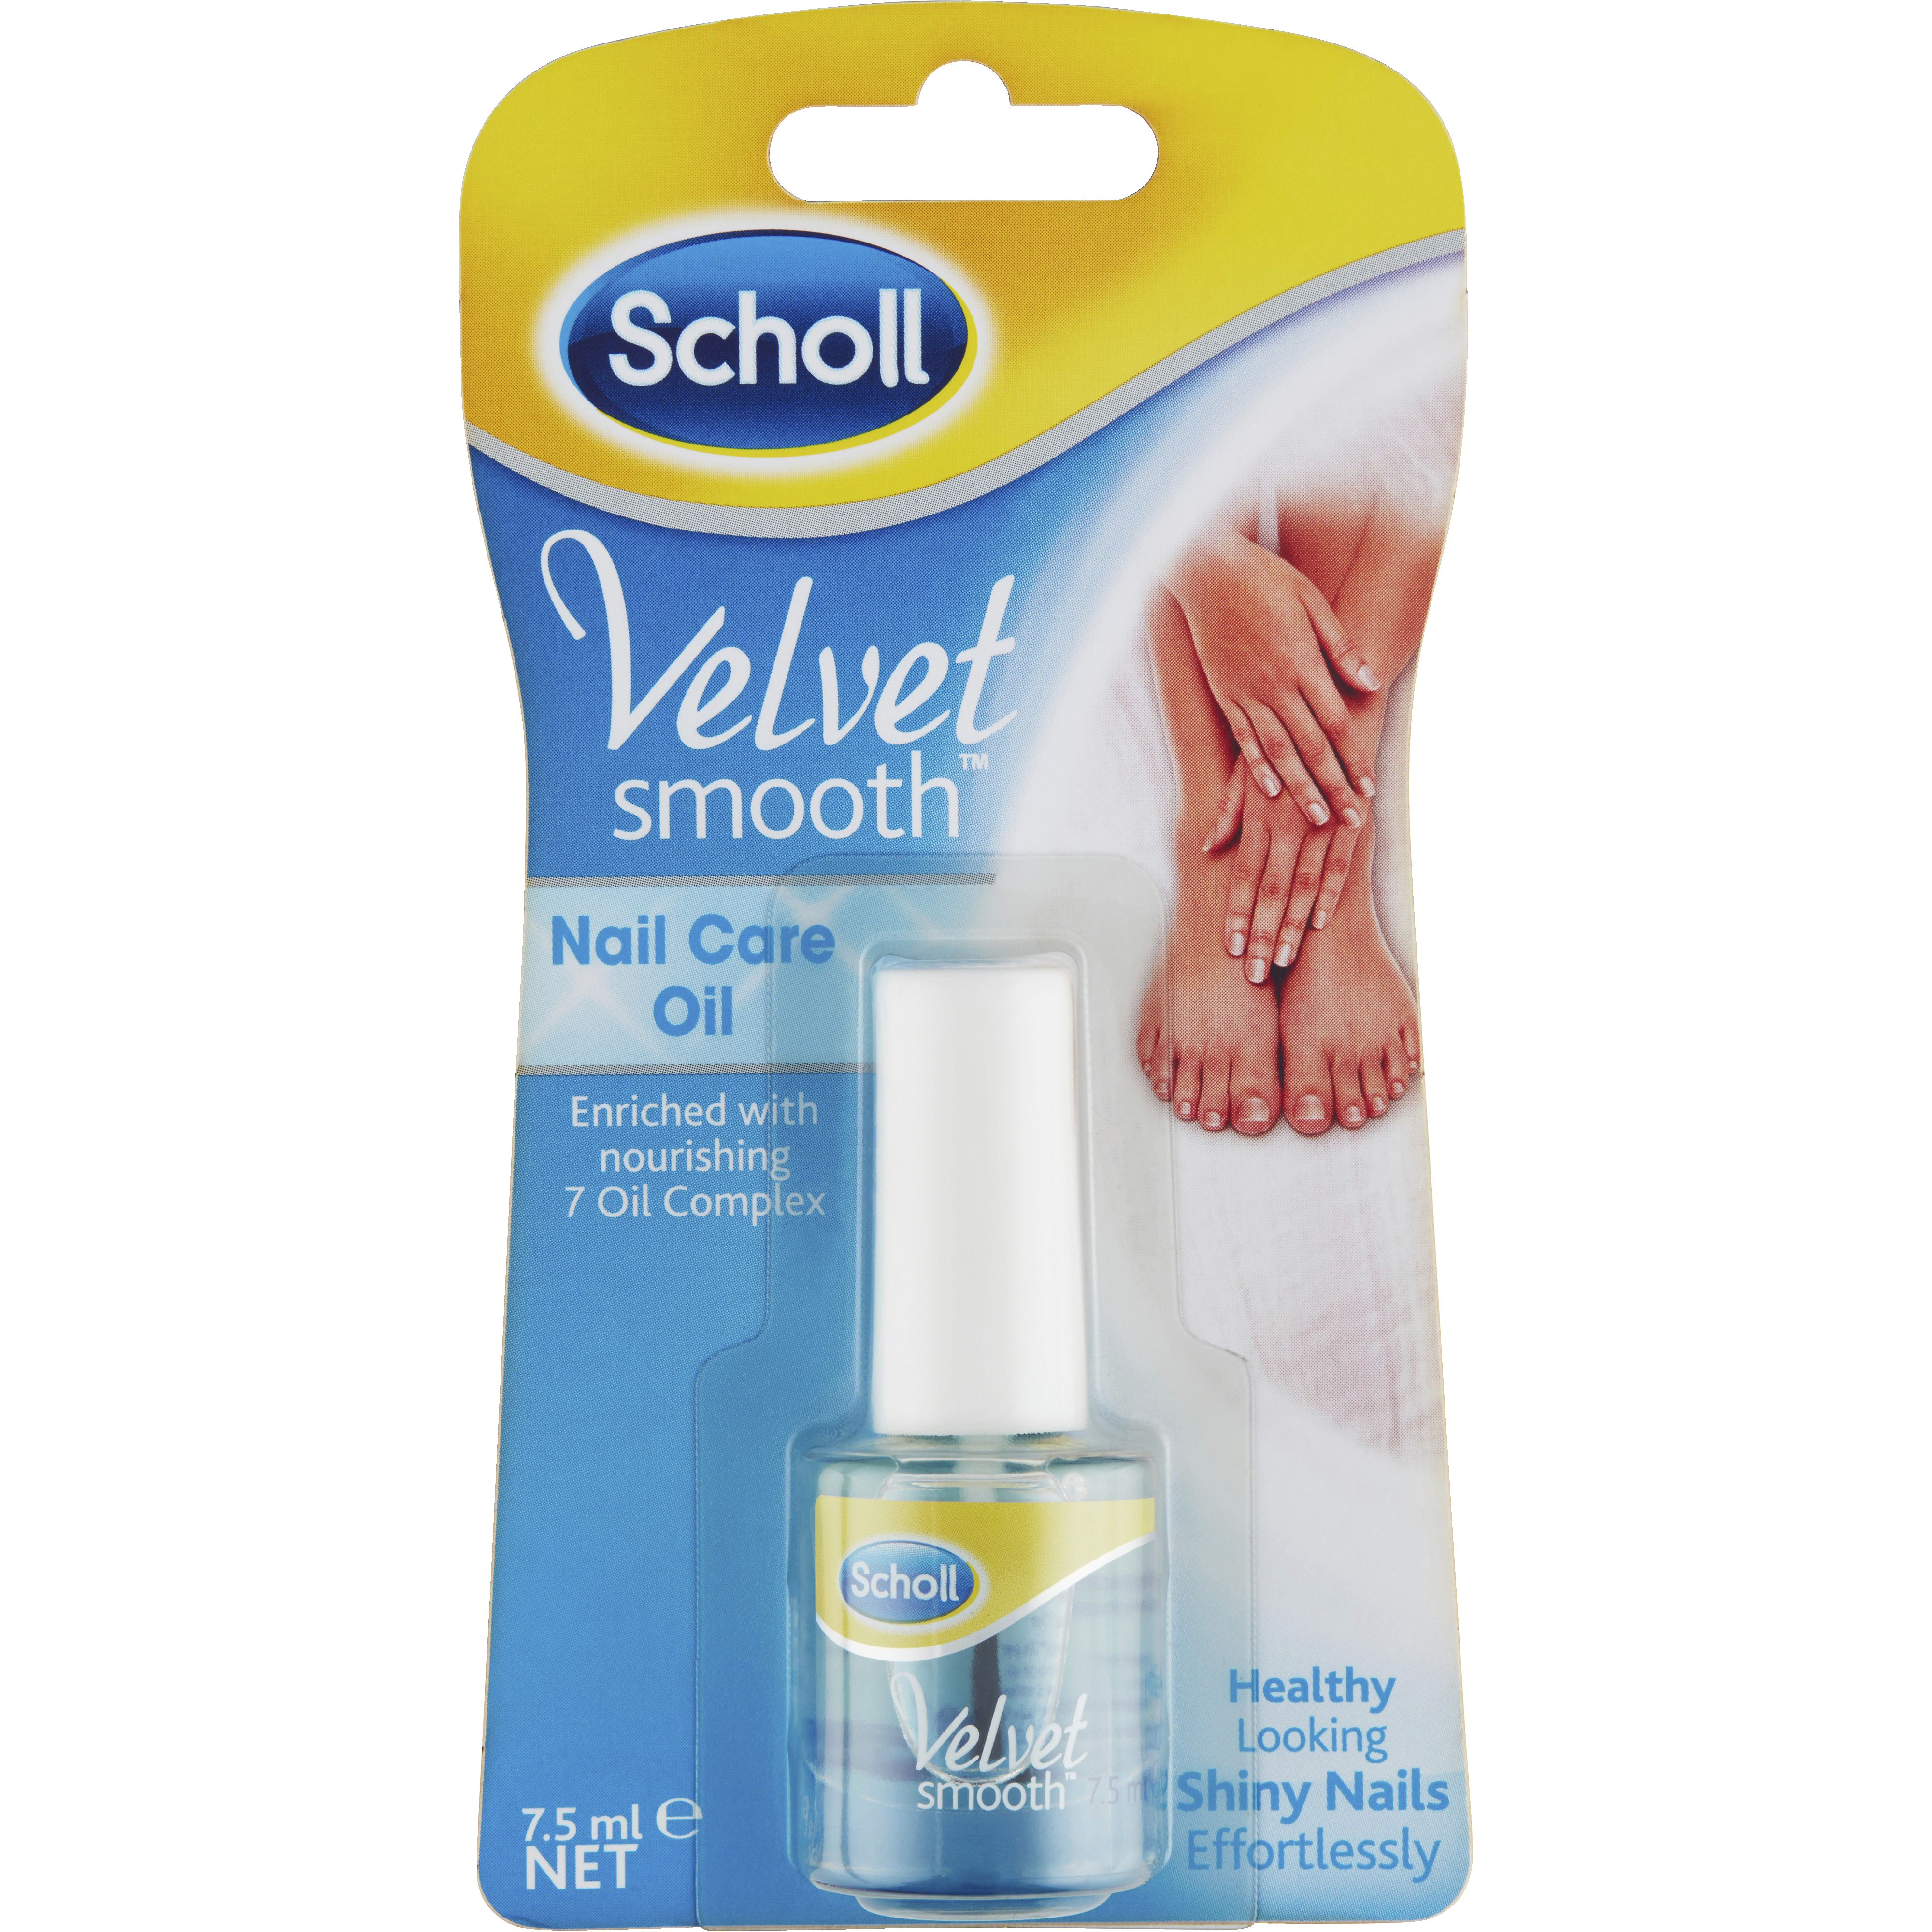 Scholl Velvet Smooth negleolie - Manicure og pedicure - Elgiganten